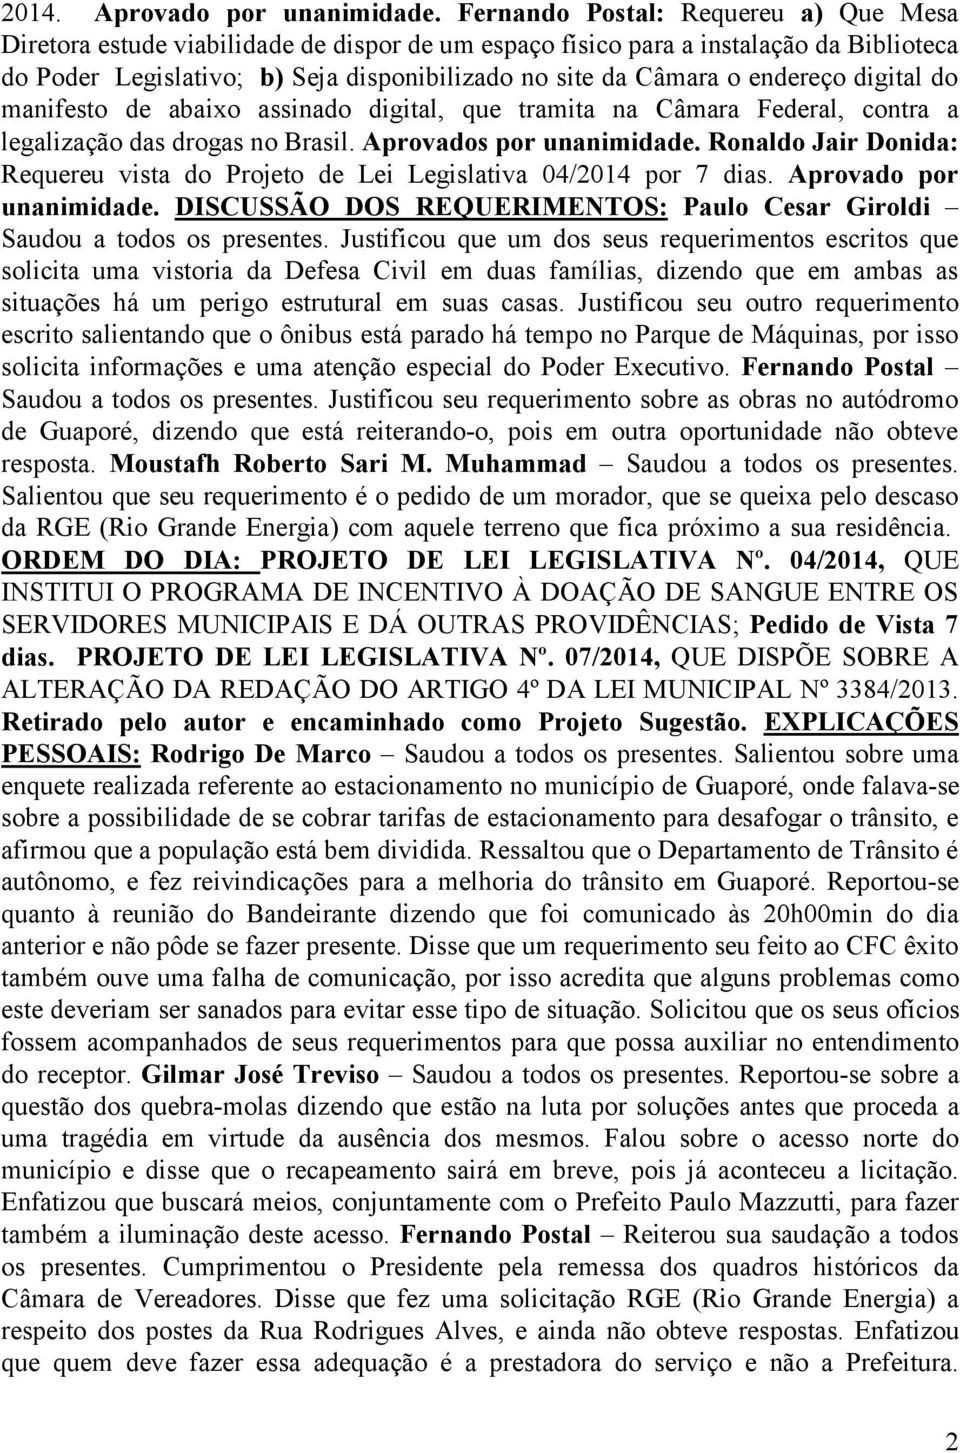 endereço digital do manifesto de abaixo assinado digital, que tramita na Câmara Federal, contra a legalização das drogas no Brasil. Aprovados por unanimidade.